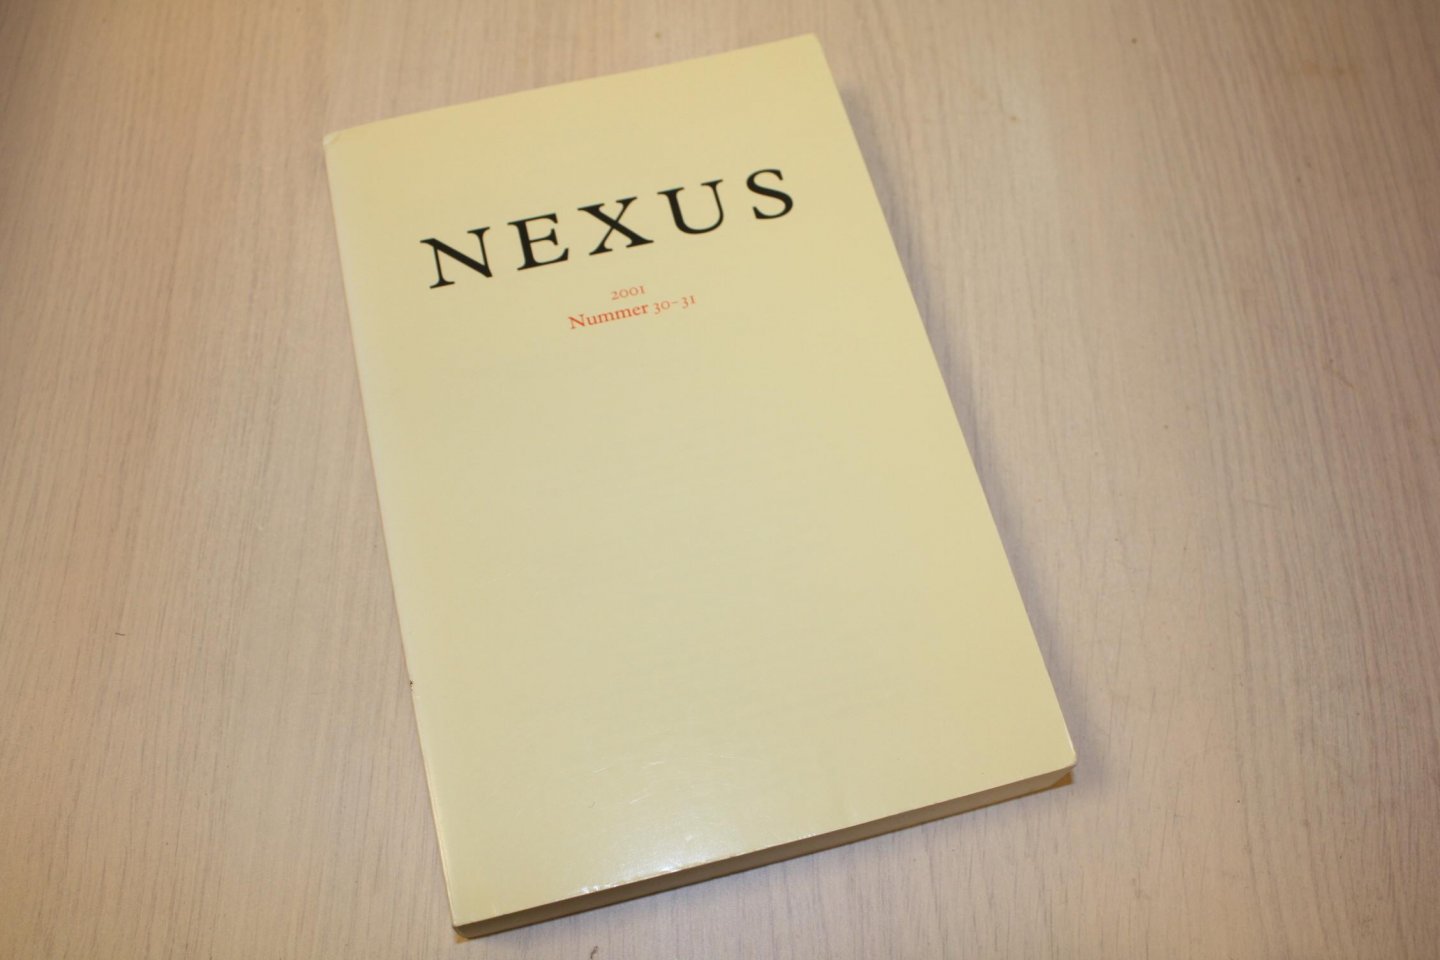 redactie - Nexus, jaar 2001, nummer 30-31.